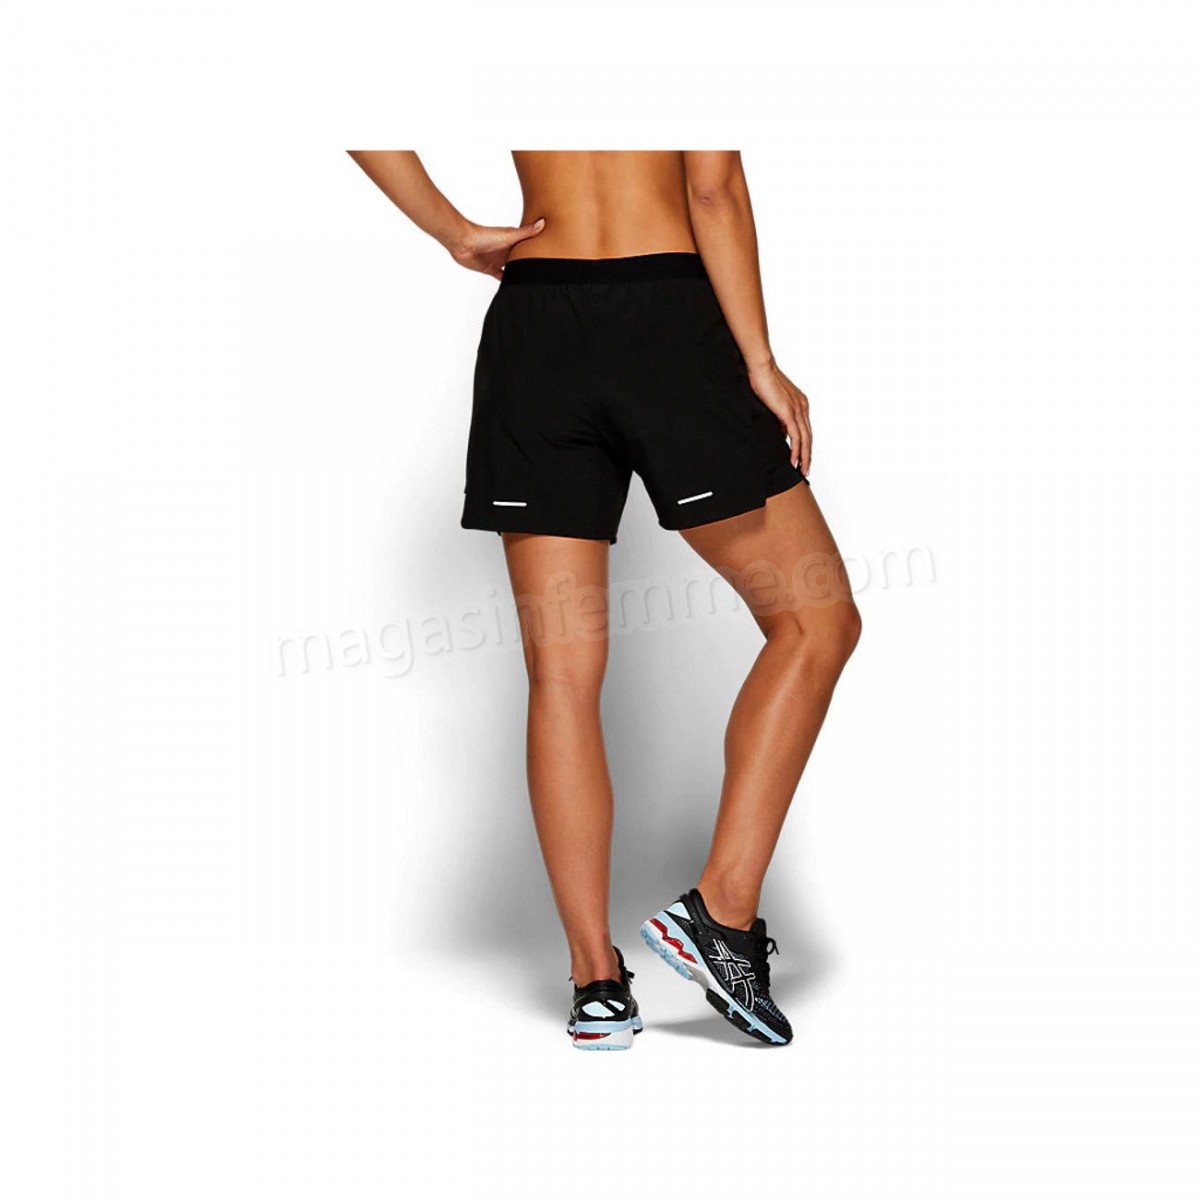 Asics-Fitness femme ASICS Short femme Asics 2 N 1 5.5in en solde - -2